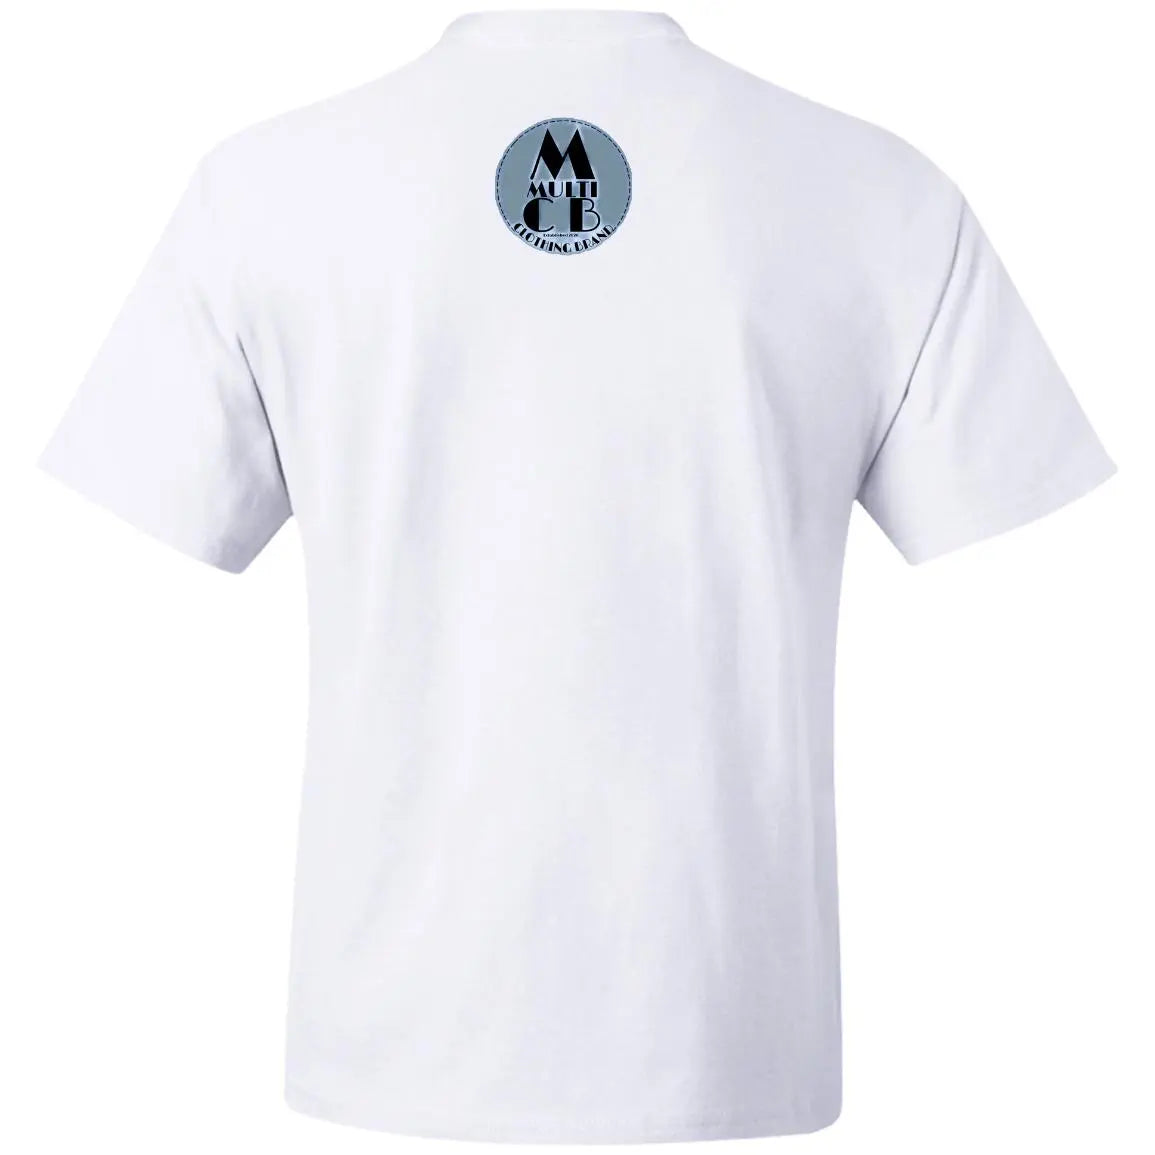 Footsteps - Men's Beefy T-Shirt CustomCat